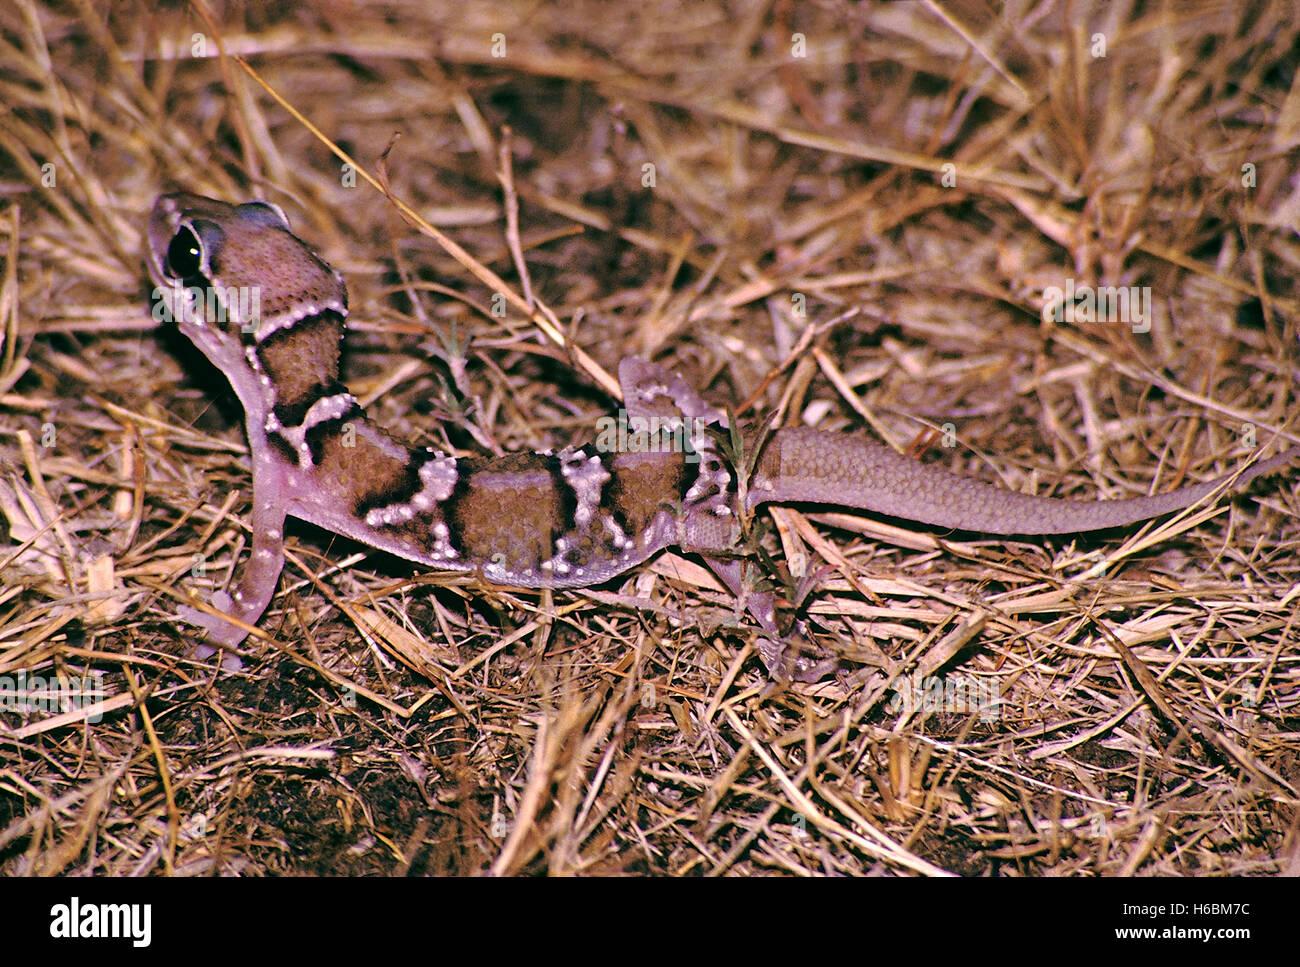 Termite hill gecko, hemidactylus triedrus. vivacemente colorato gecko trovati in aree aperte. si alimenta di termiti Foto Stock